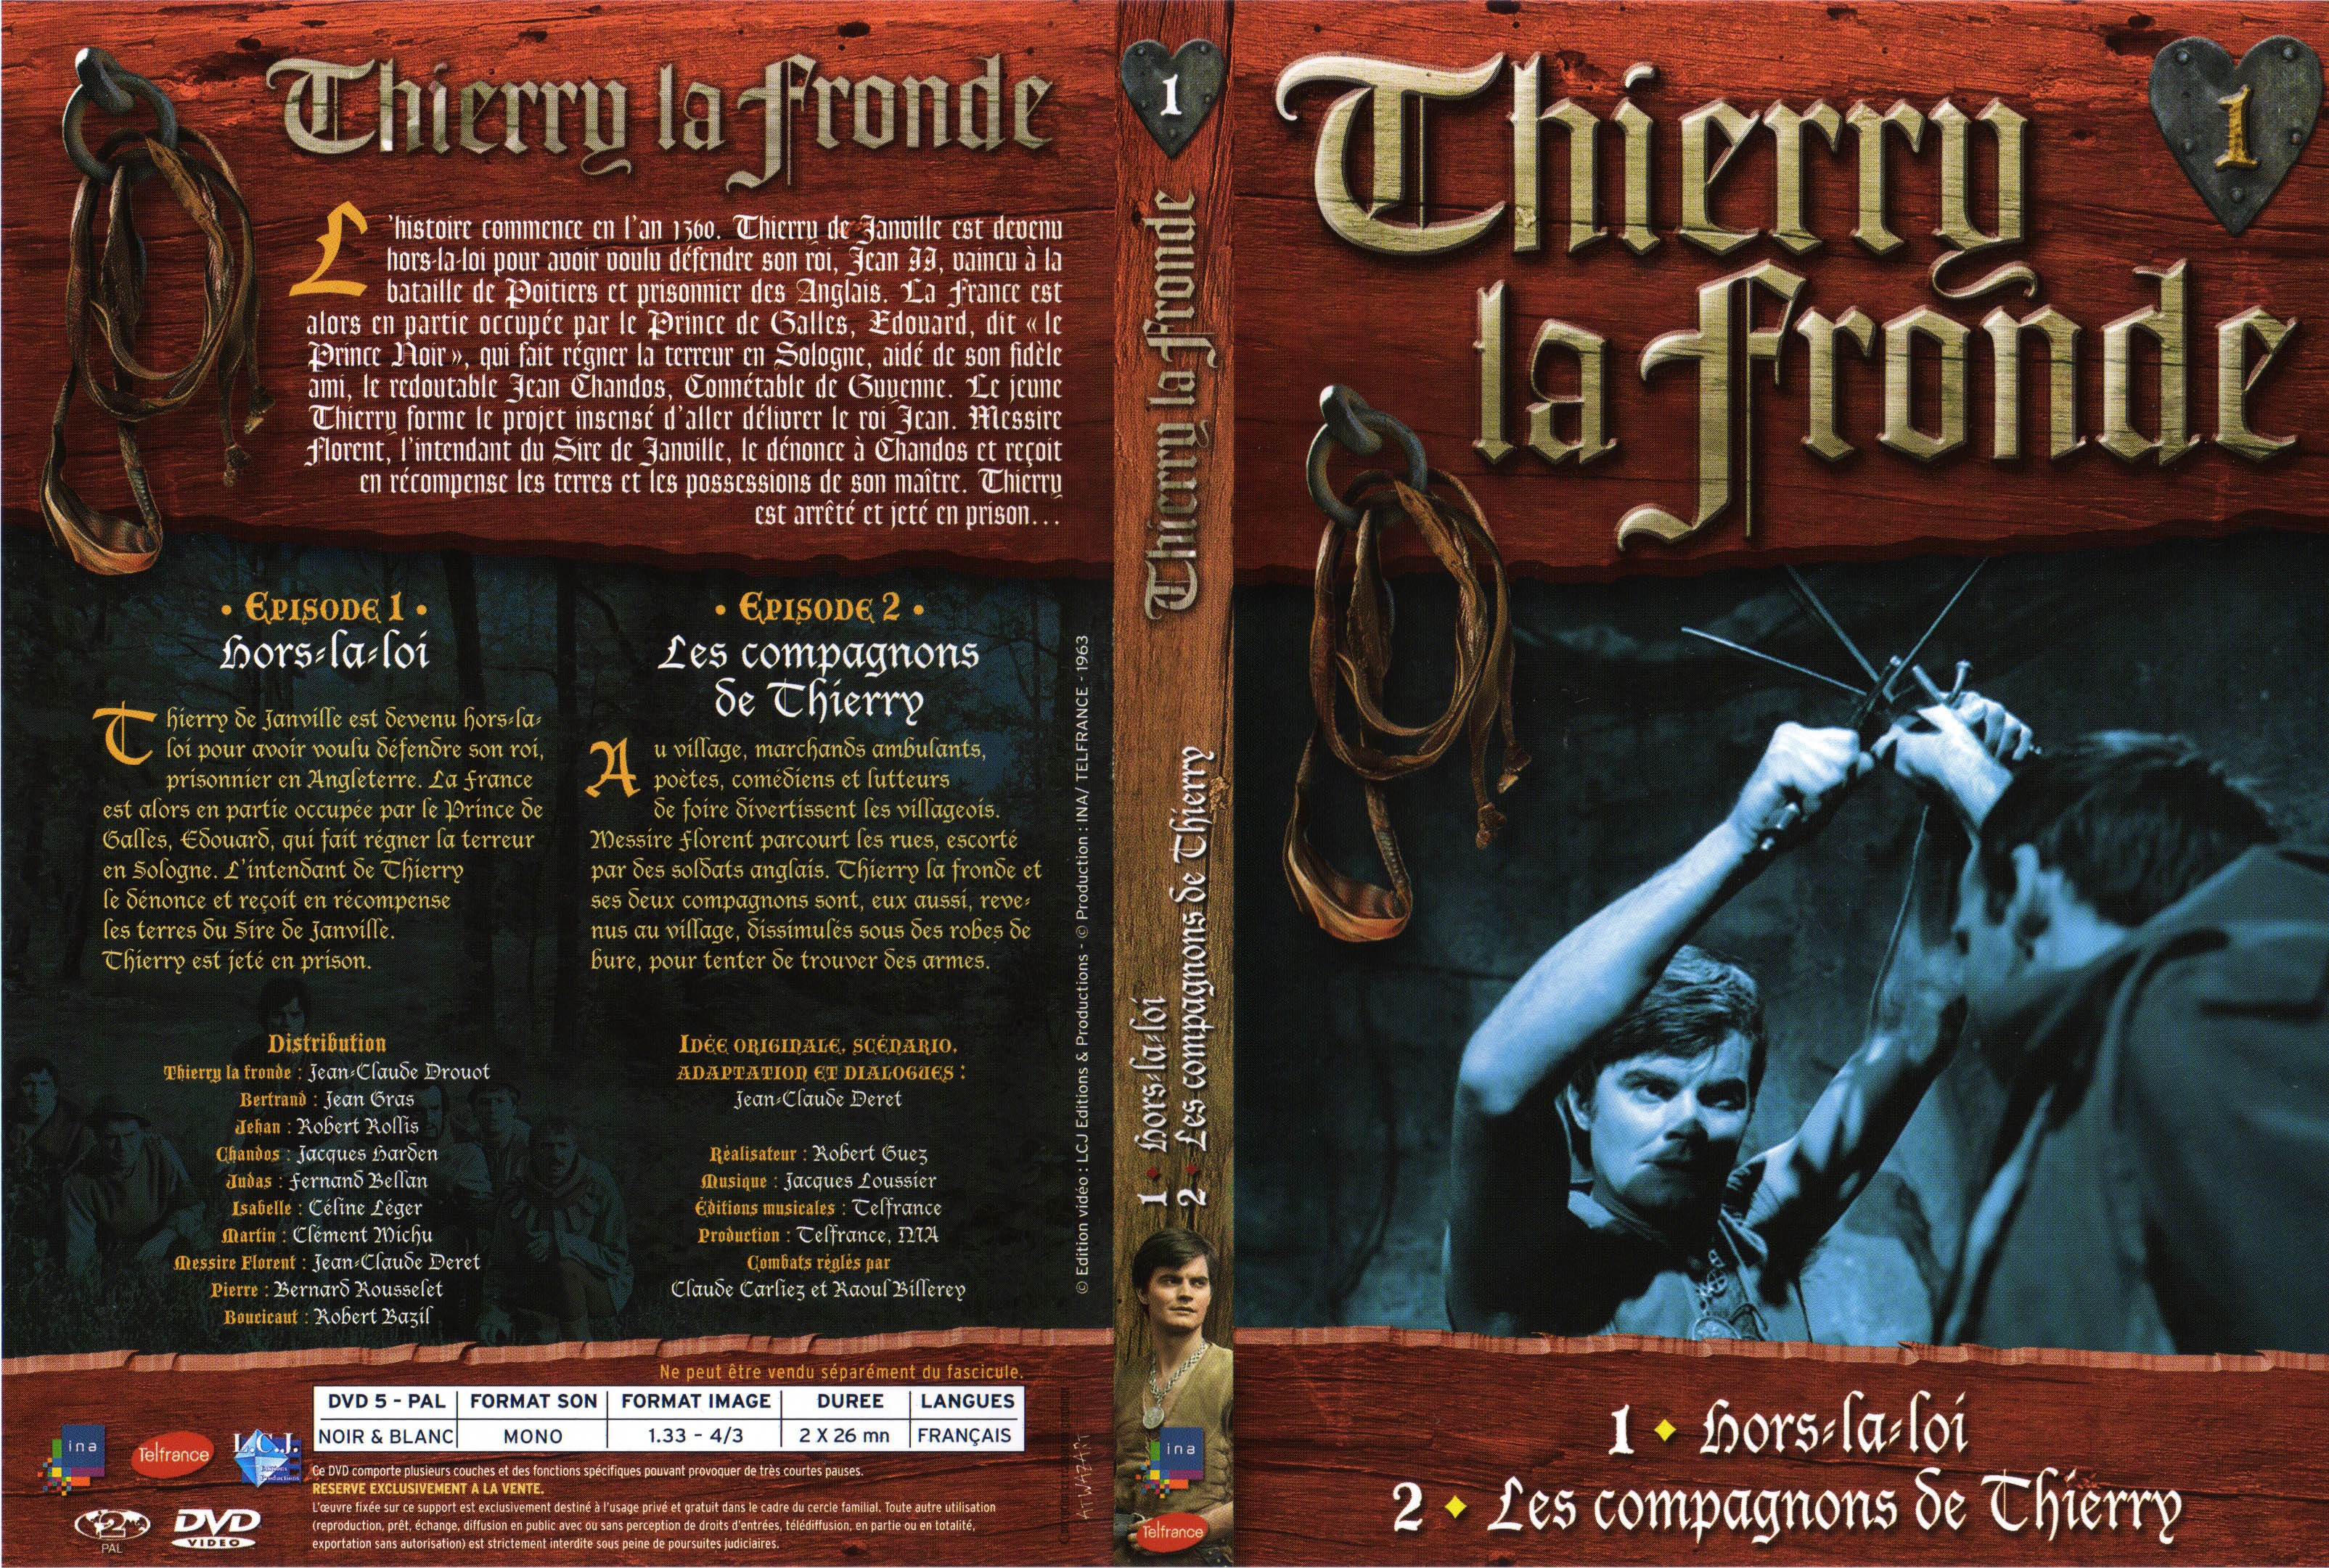 Jaquette DVD Thierry la Fronde vol 01